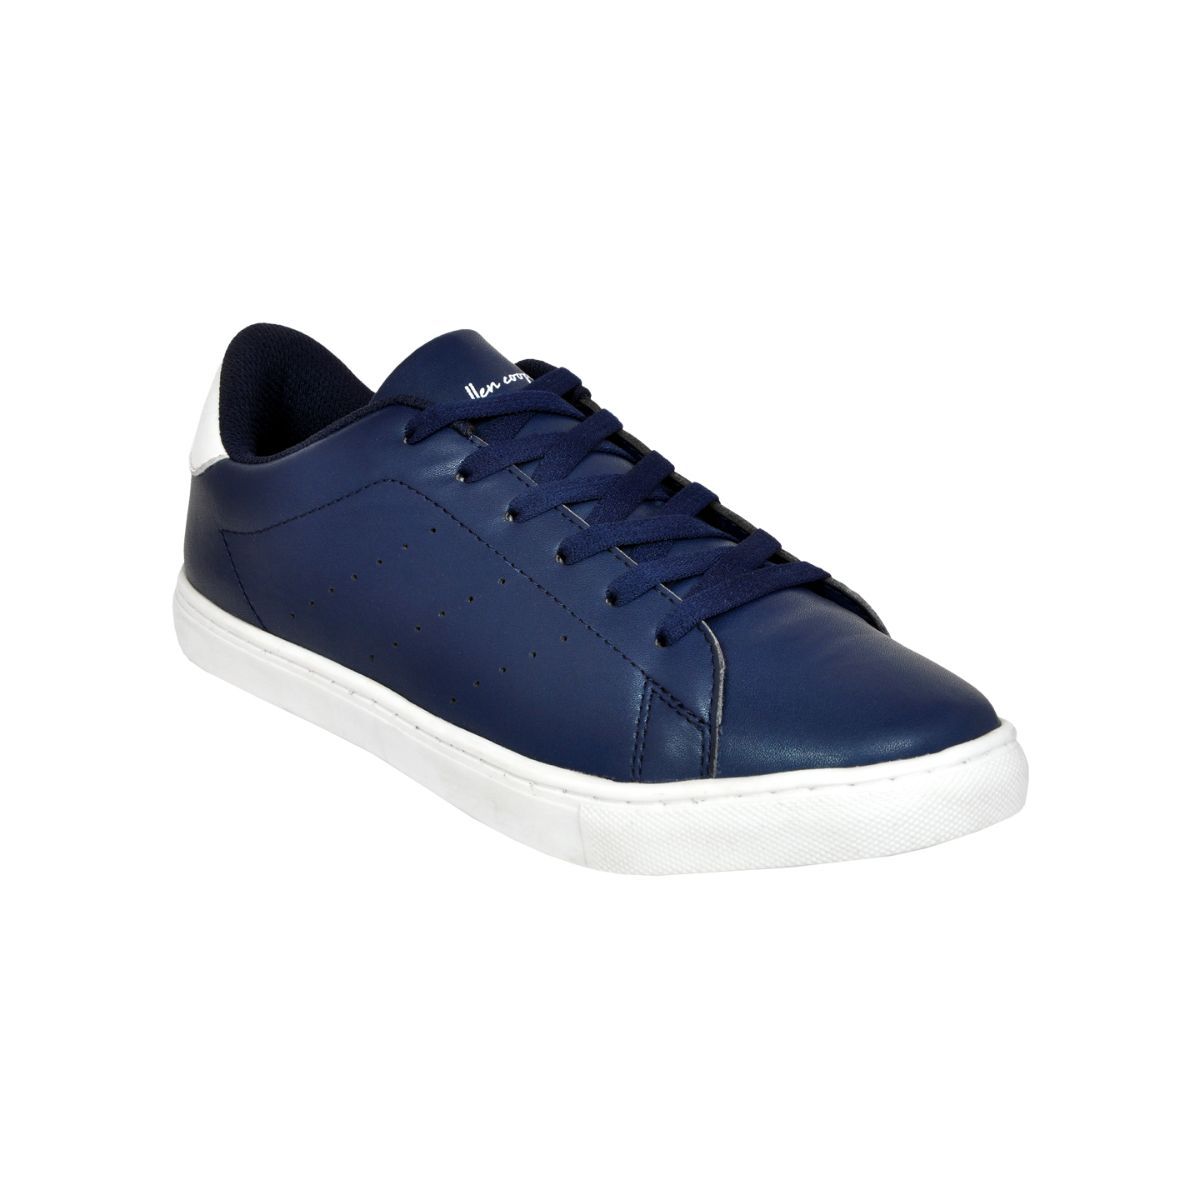 Allen Cooper Navy Blue Sneakers For Men - 10